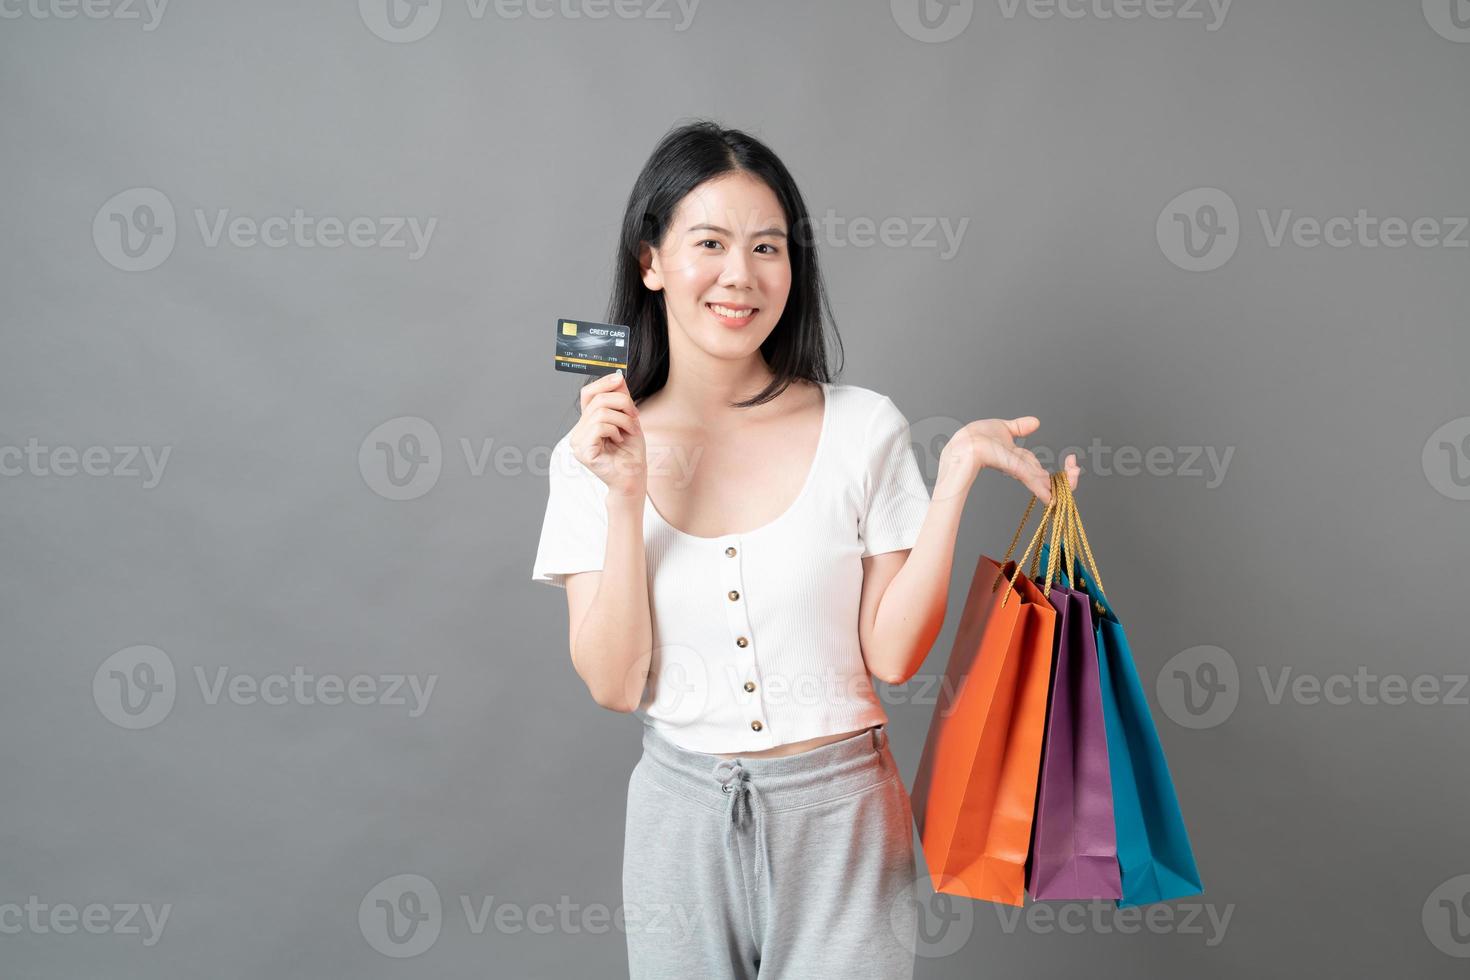 jeune femme asiatique hand holding shopping bag et carte de crédit sur fond gris photo